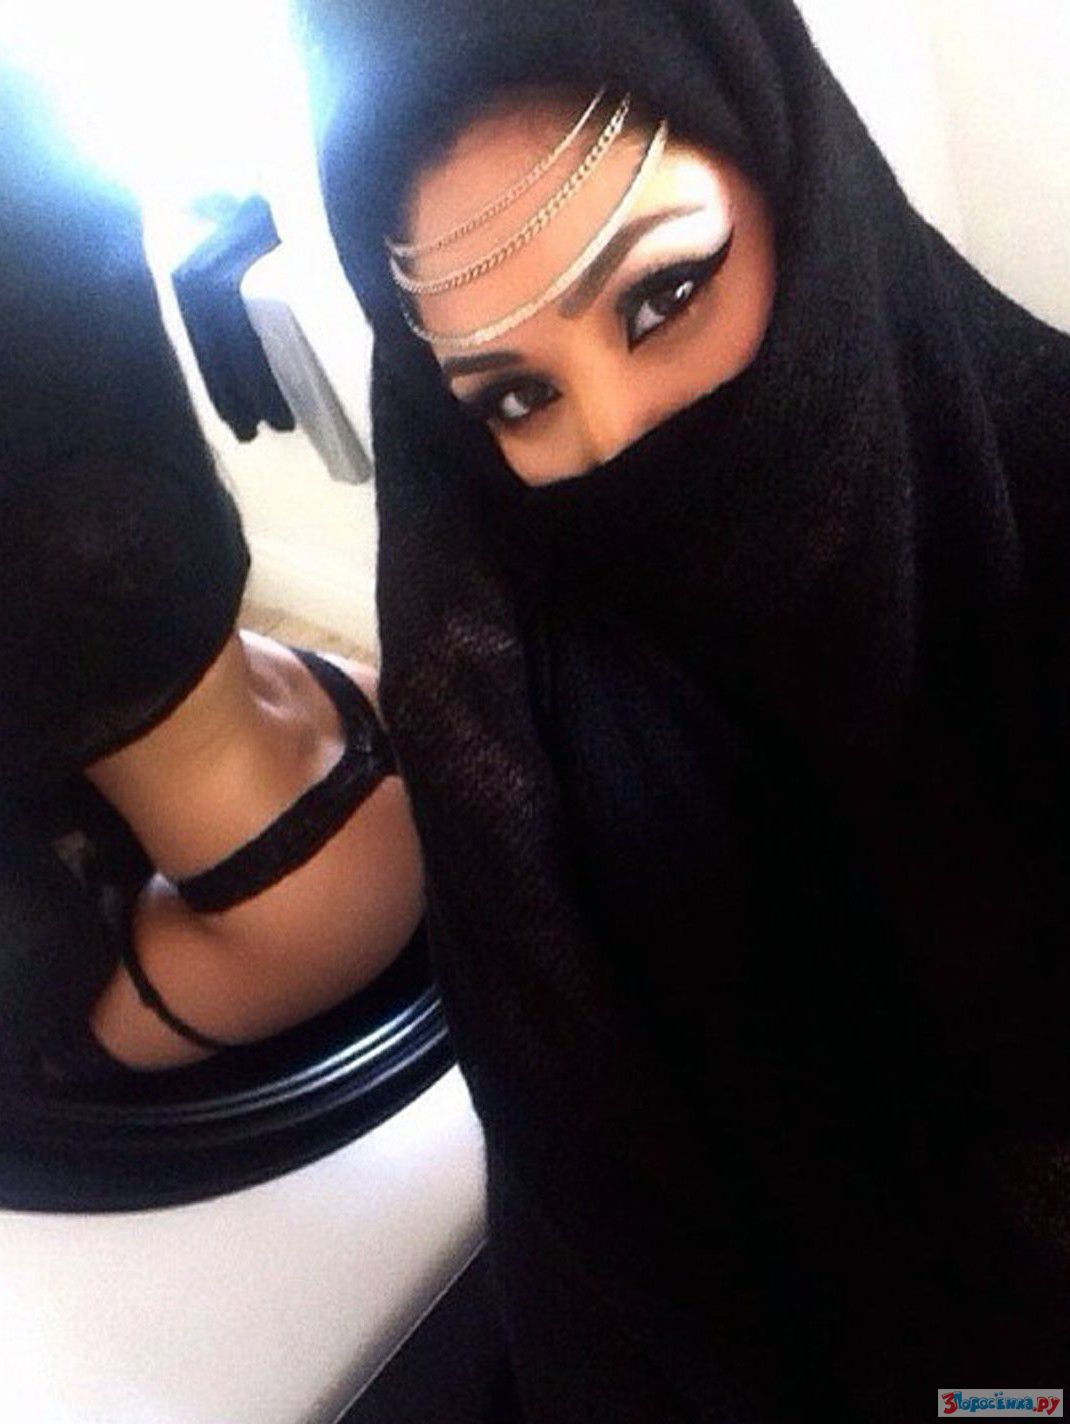 Арабская красавица в платке не устояла увидев торчащий член